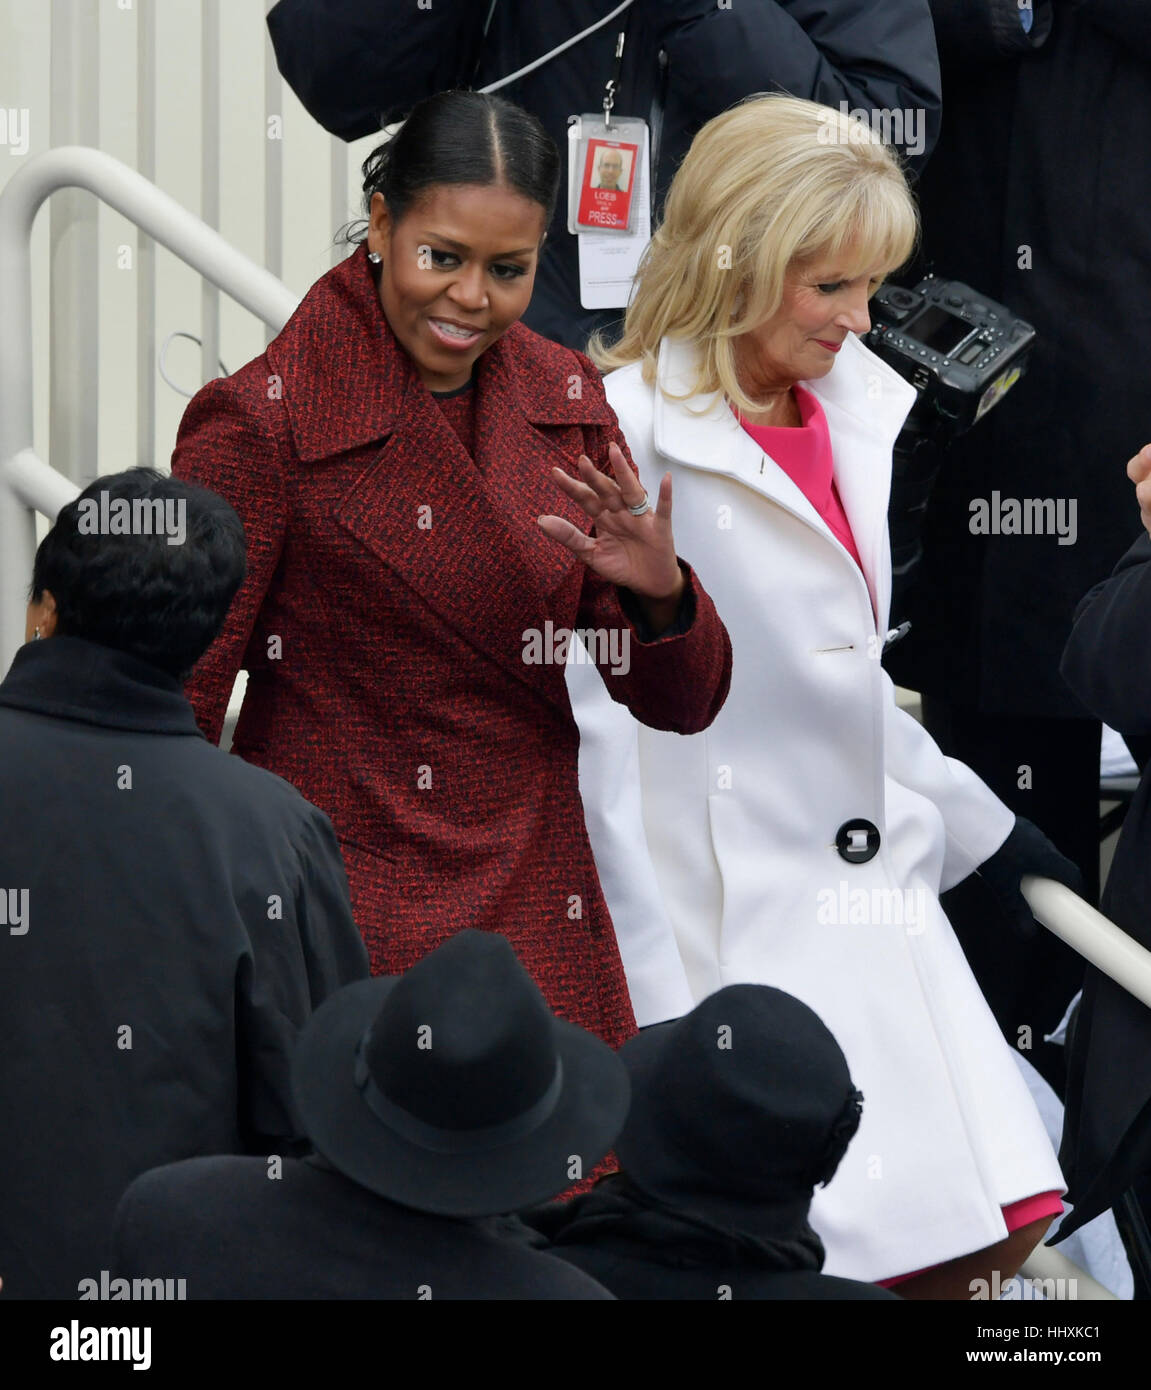 First Lady Michelle Obama, kommt links, mit Vize-Präsident Joe Biden Frau, Dr. Jill Biden für die 58. Presidential Inauguration für gewählte Präsident Donald Trump auf das Kapitol in Washington, Freitag, 20. Januar 2017. (AP Photo/Susan Walsh) Stockfoto